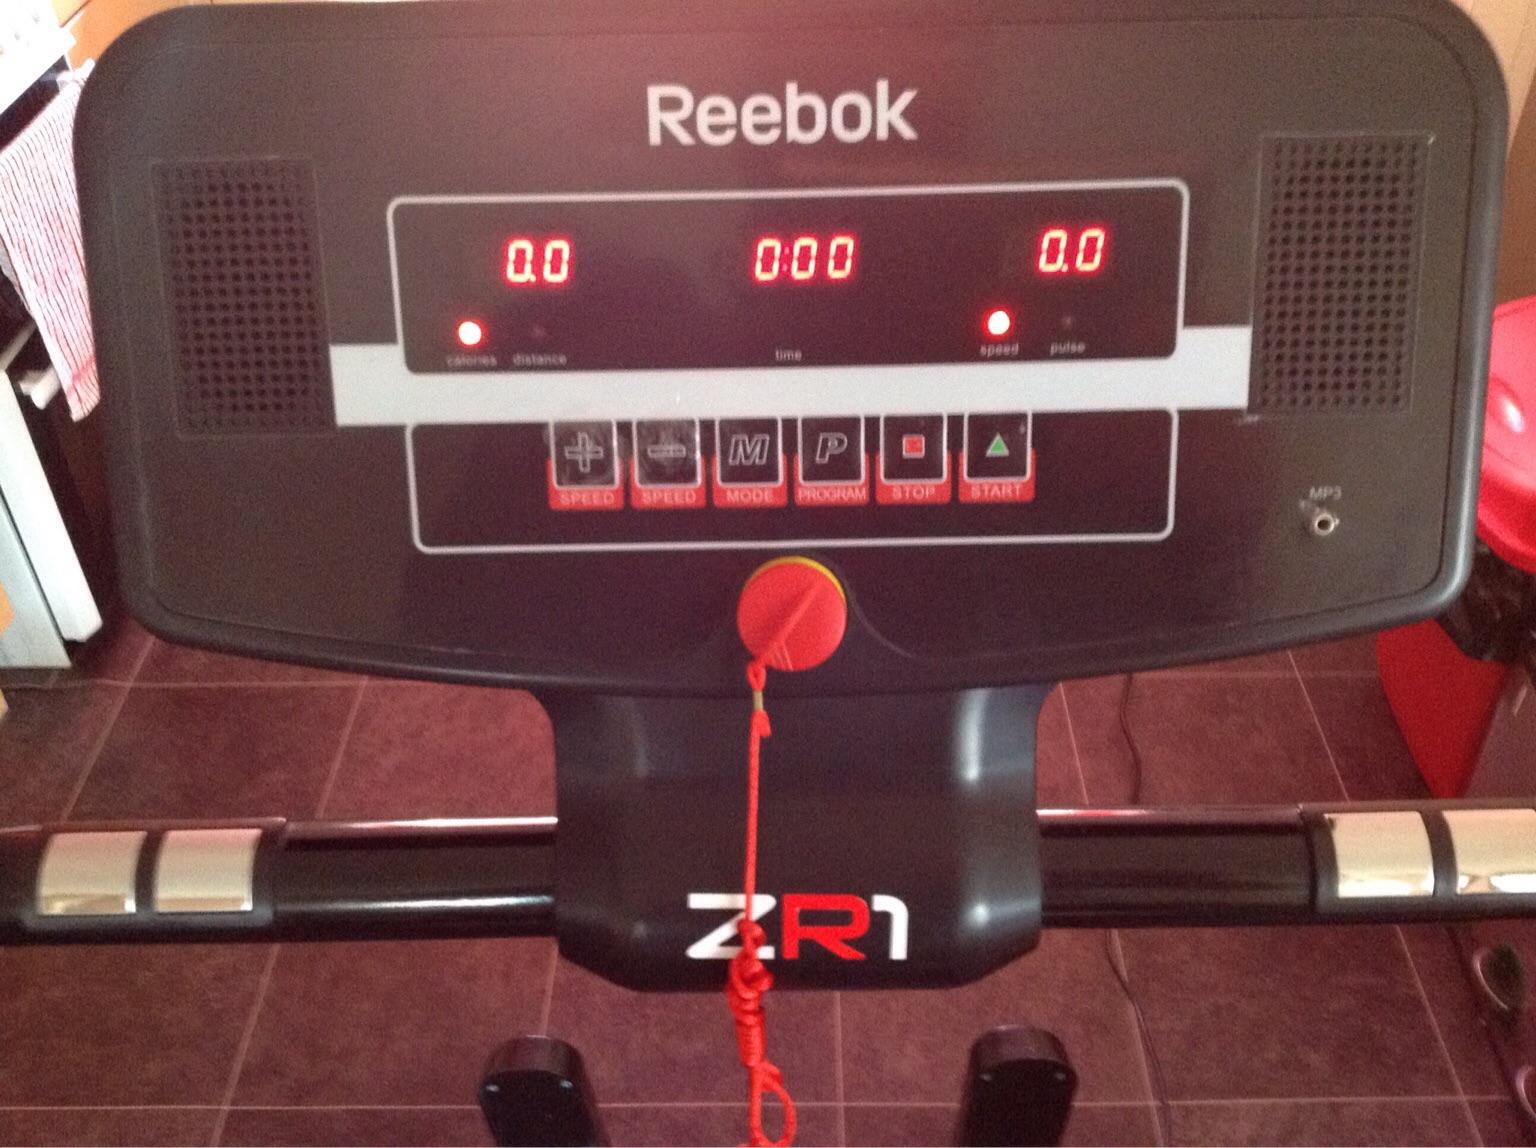 reebok zr1 treadmill manual